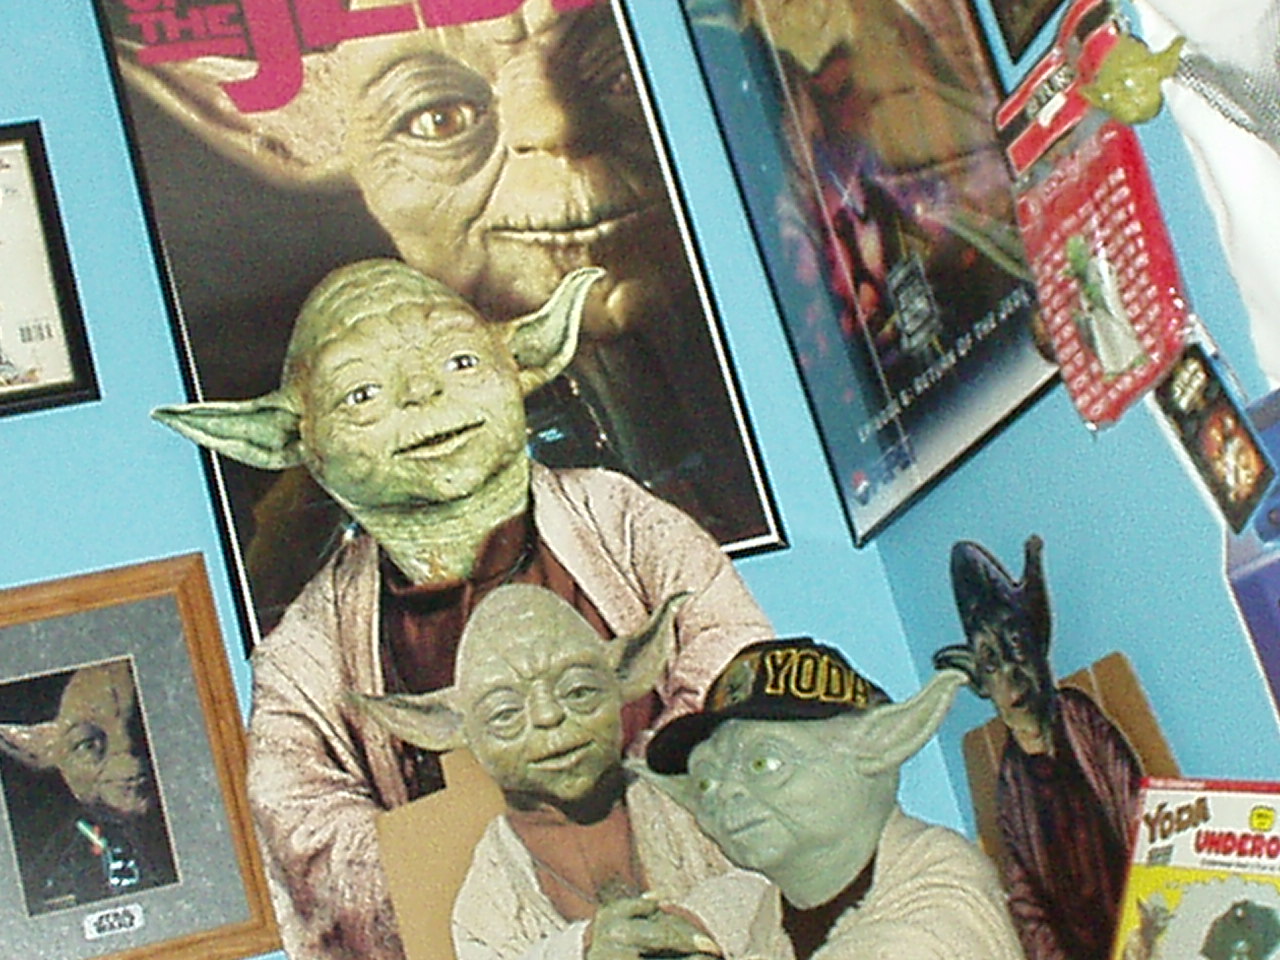 A few cardboard Yodas and a lifesize replica